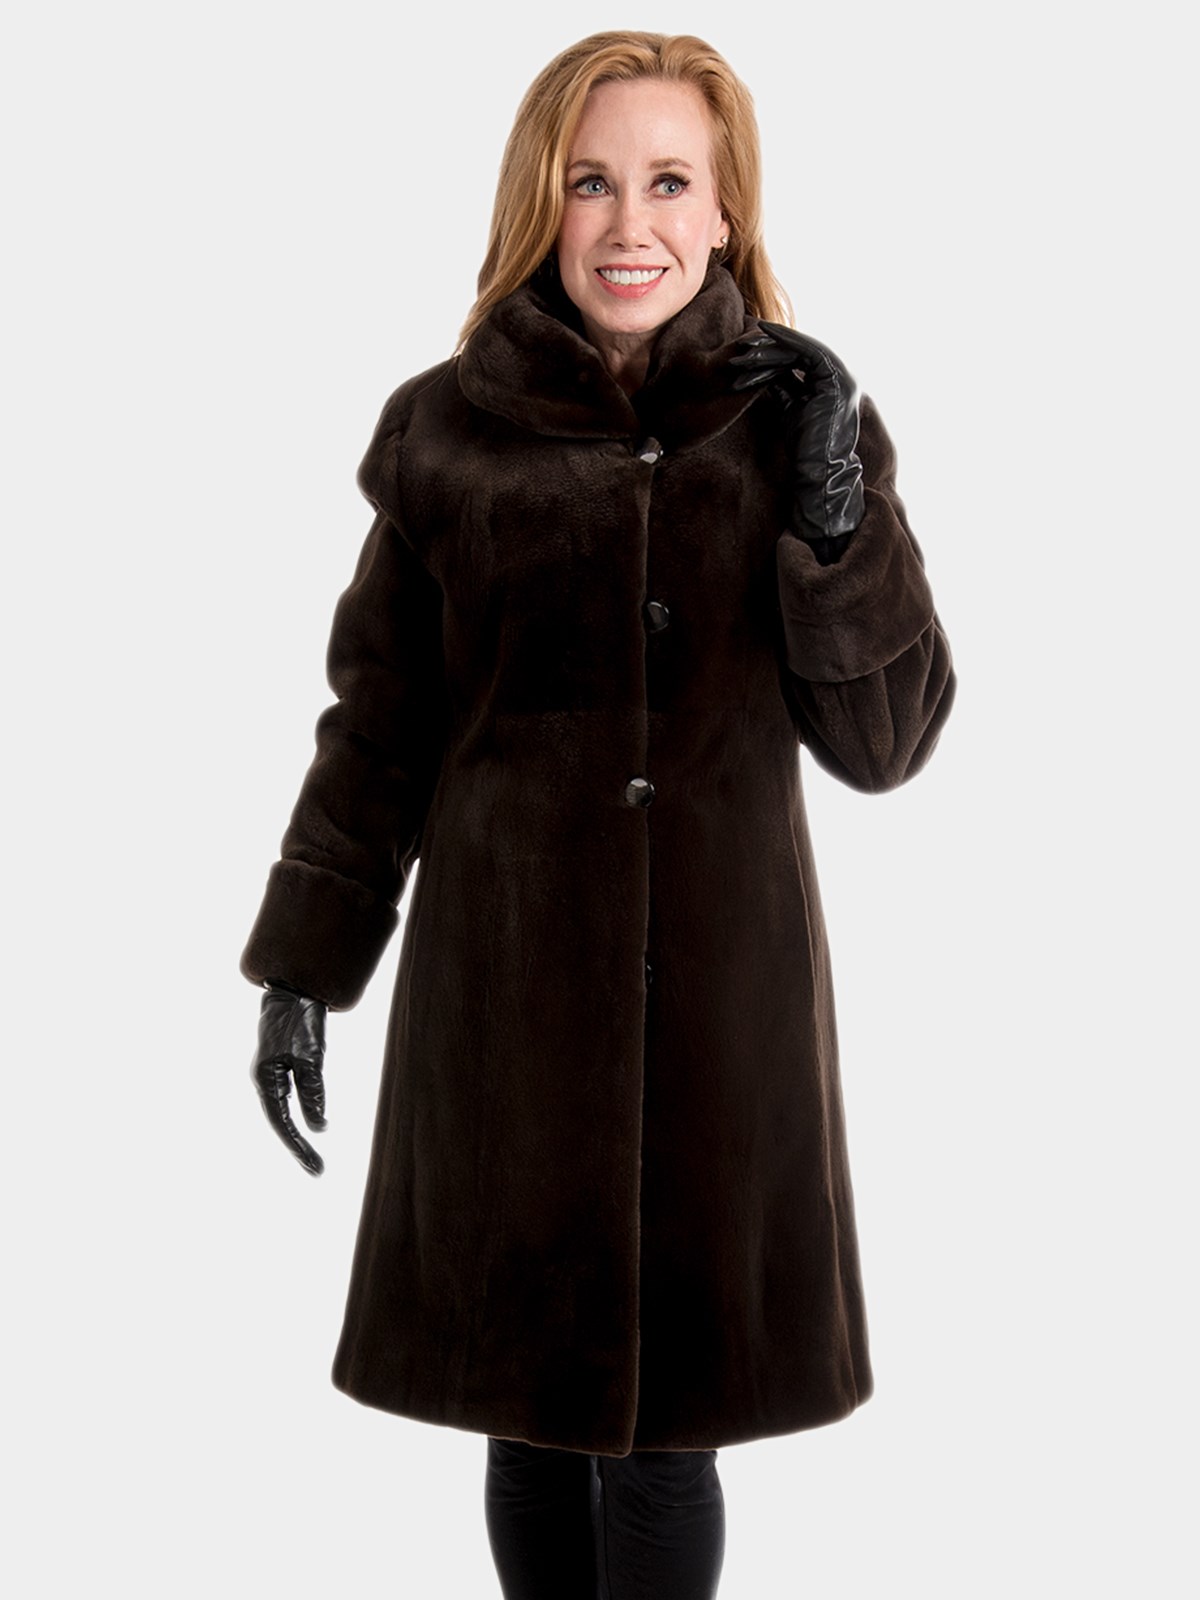 Woman's Dark Brown Sheared Mink Fur 3/4 Coat Reversible to Rain Fabric